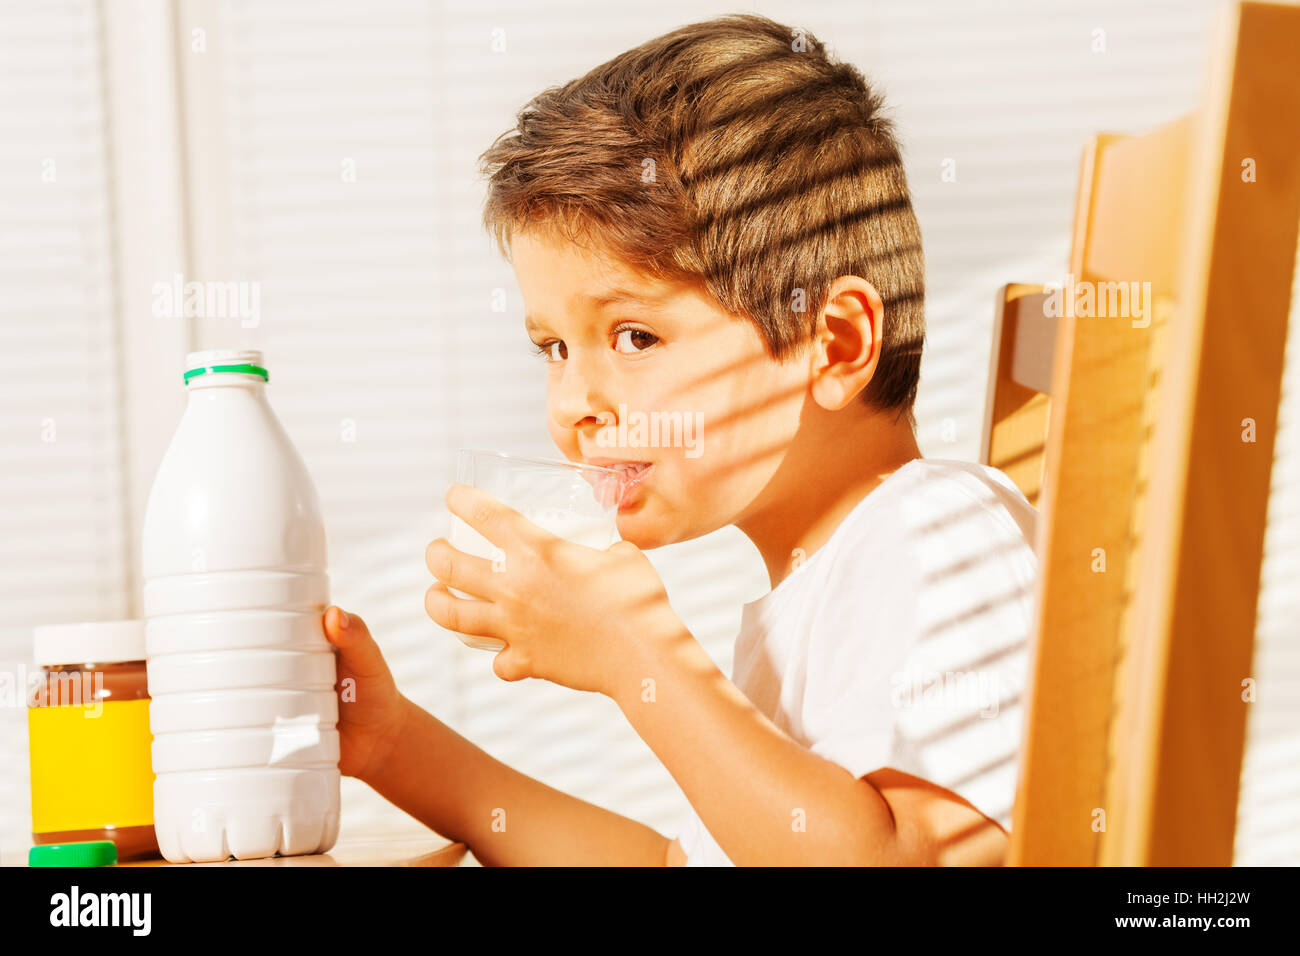 Petit garçon buvant du lait au petit-déjeuner Banque D'Images